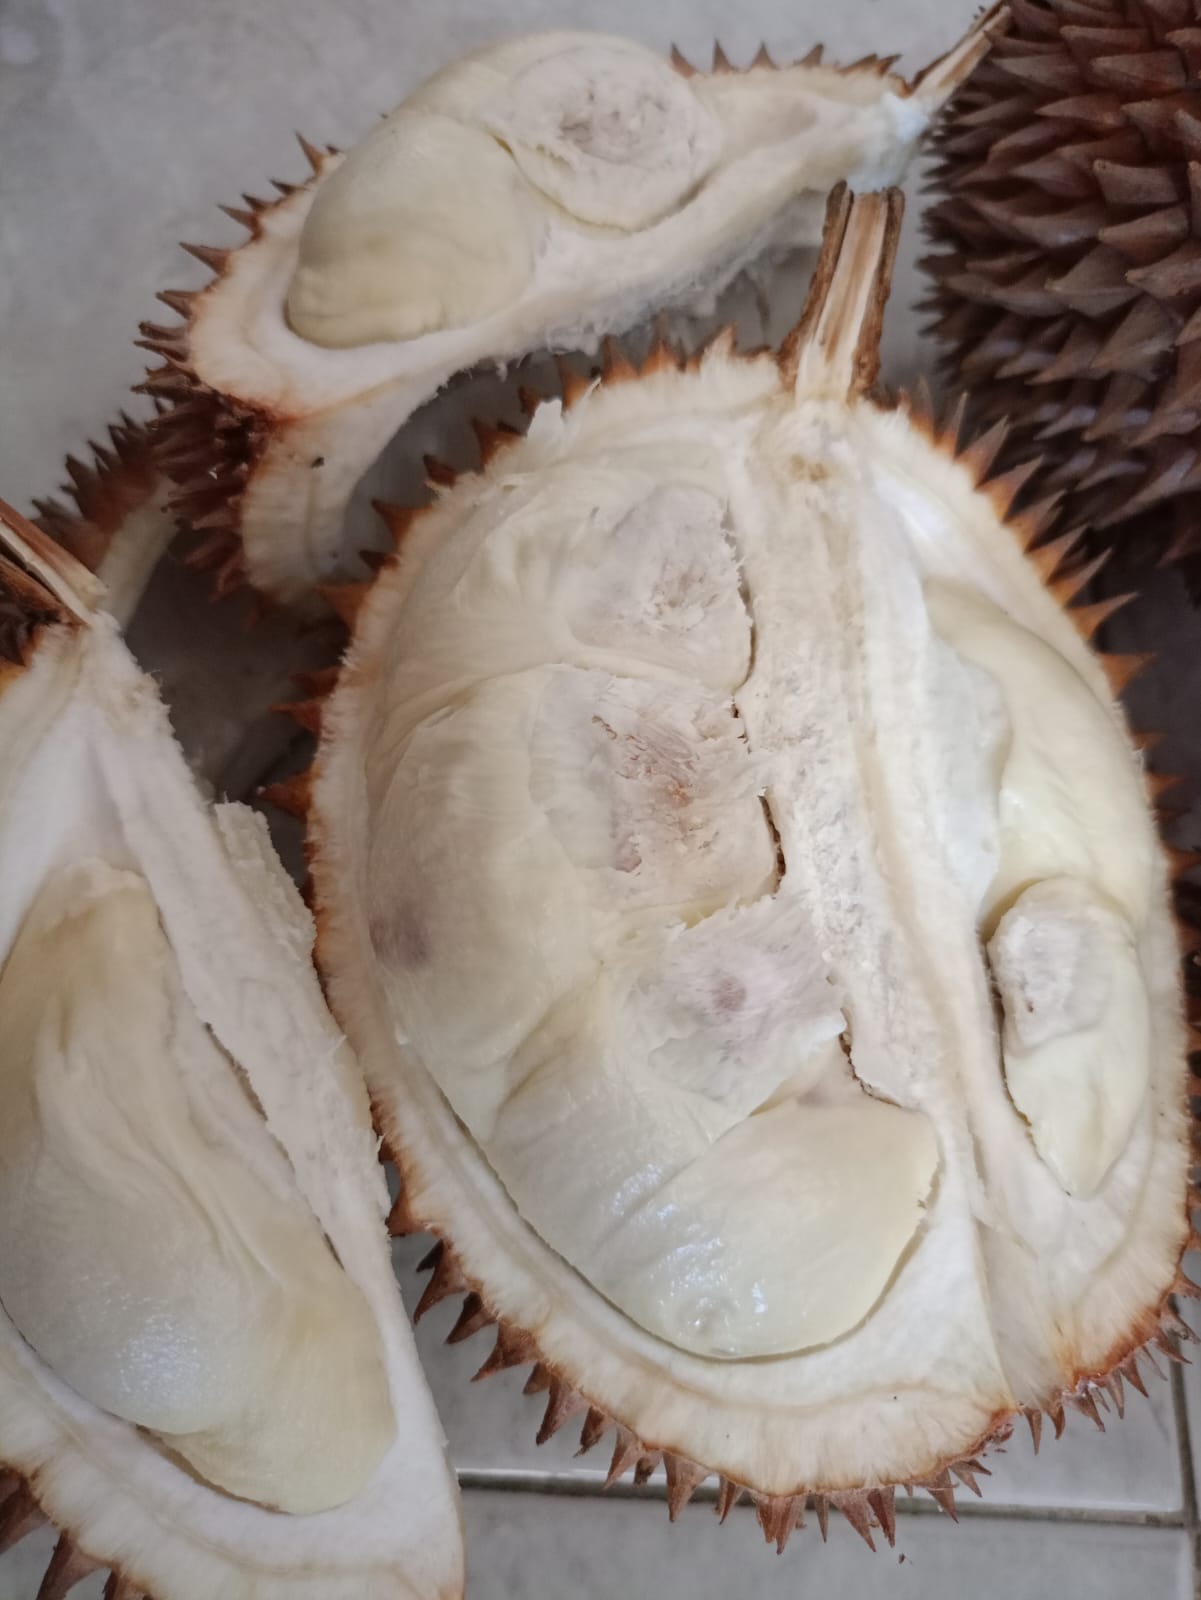 Tasikmalaya Banjir Durian, 21 Ribu Ton Durian Tasikmalaya Sudah Dipanen, Bagaimana dengan Harganya?